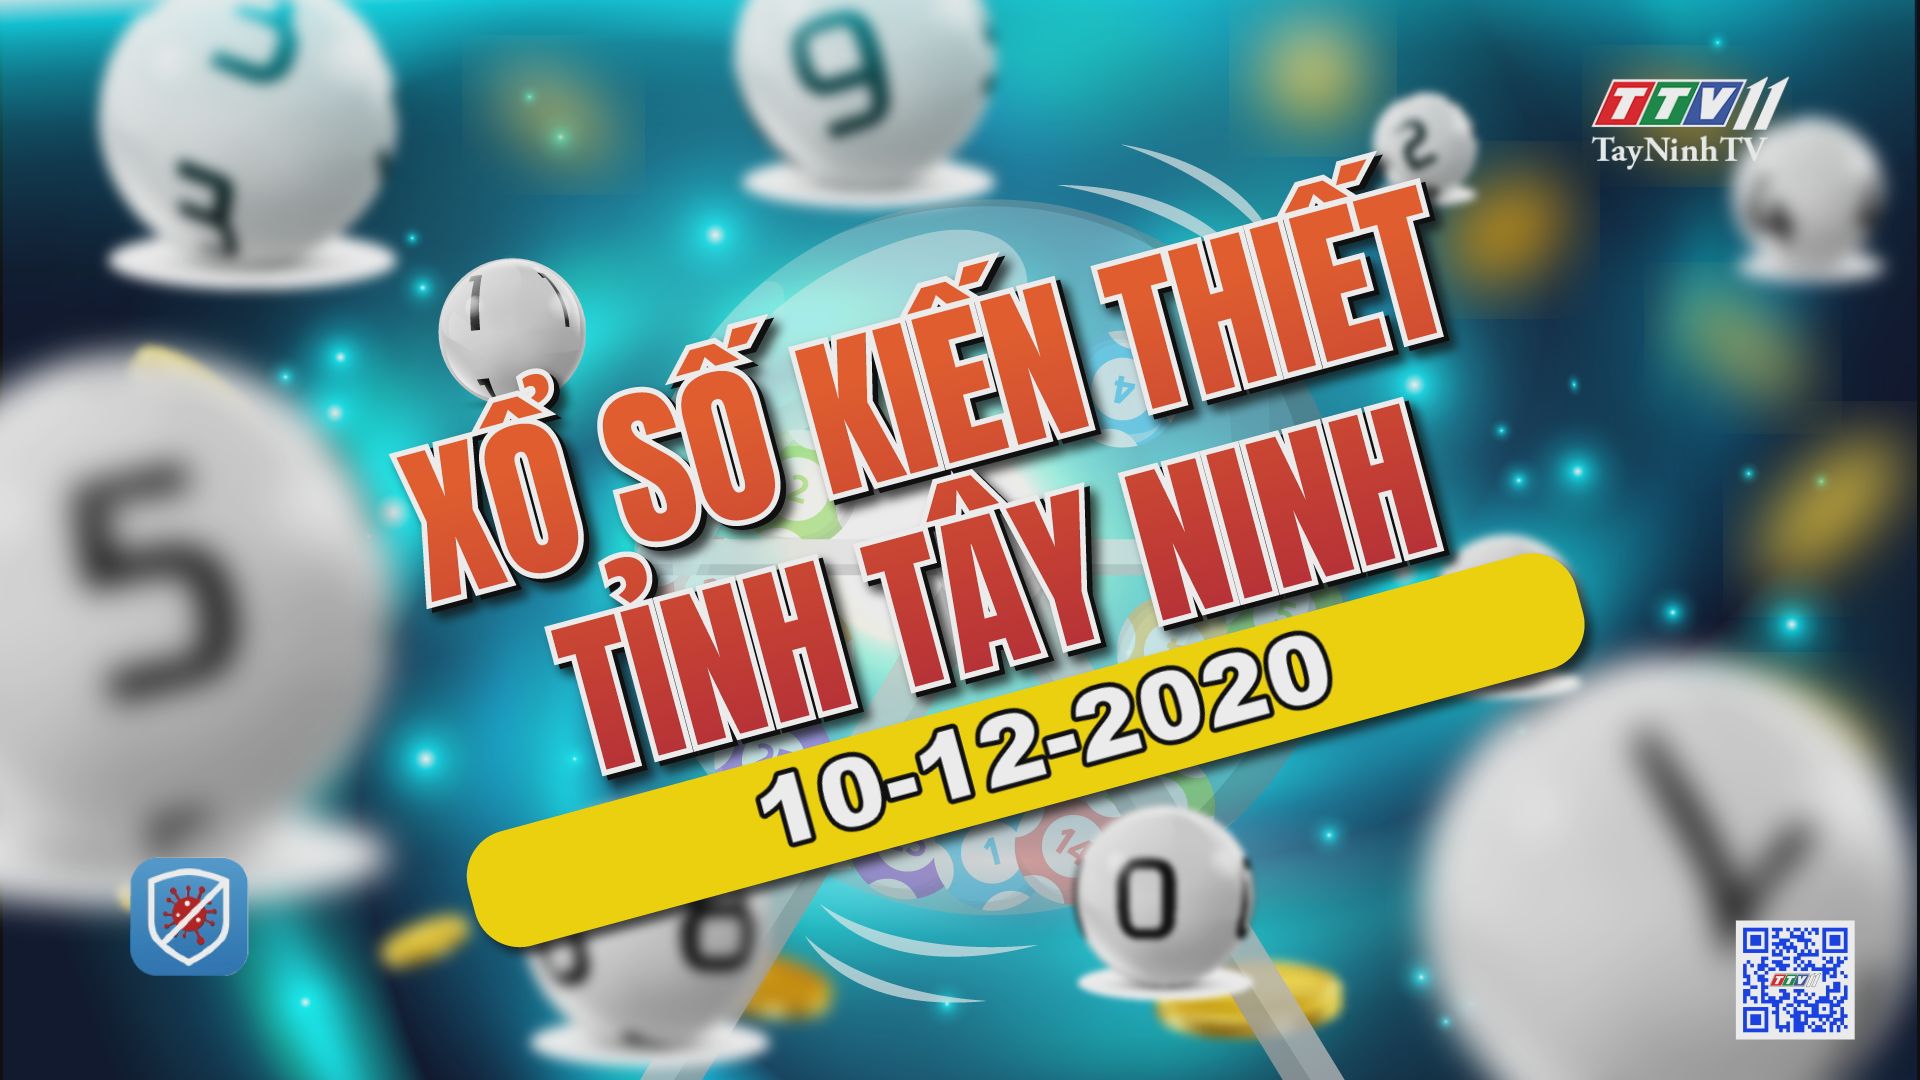 Trực tiếp Xổ số Tây Ninh ngày 10-12-2020 | TayNinhTV 